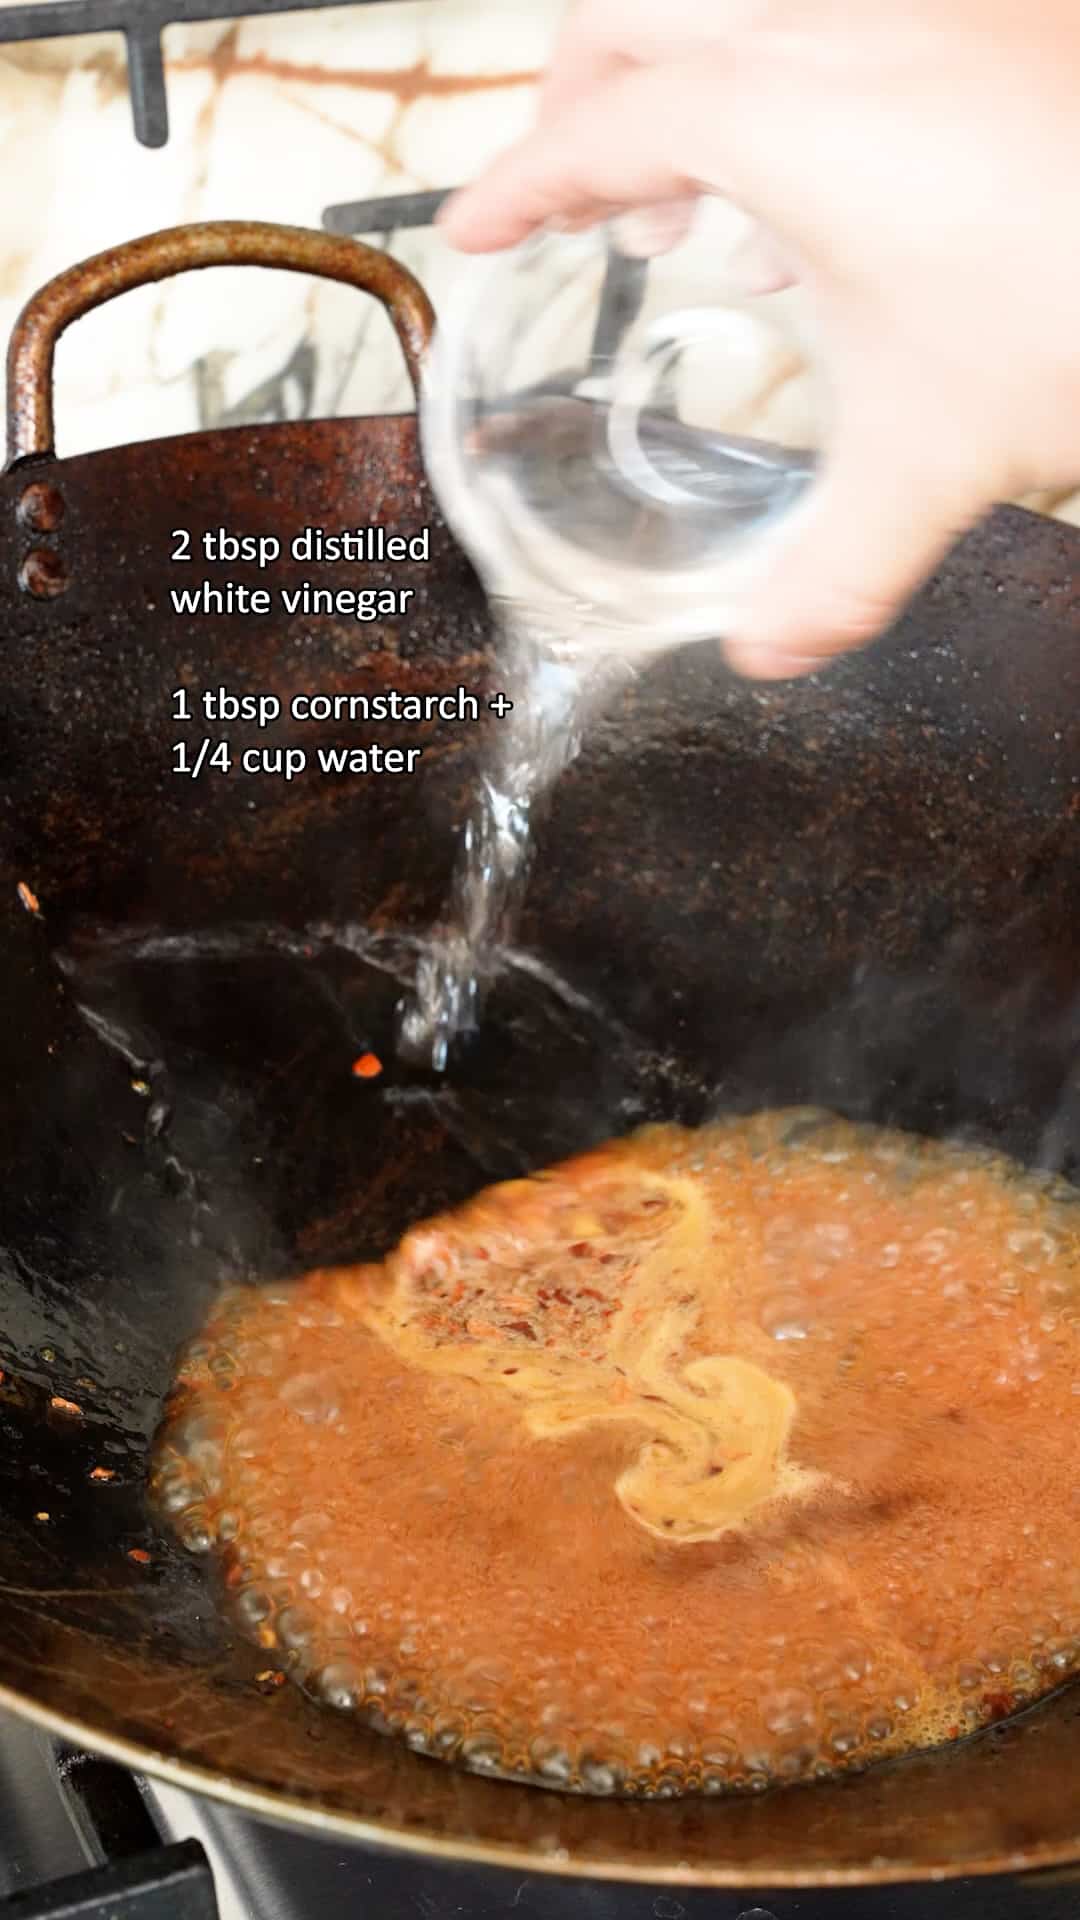 Distilled white vinegar being added to the Orange sauce in a wok.